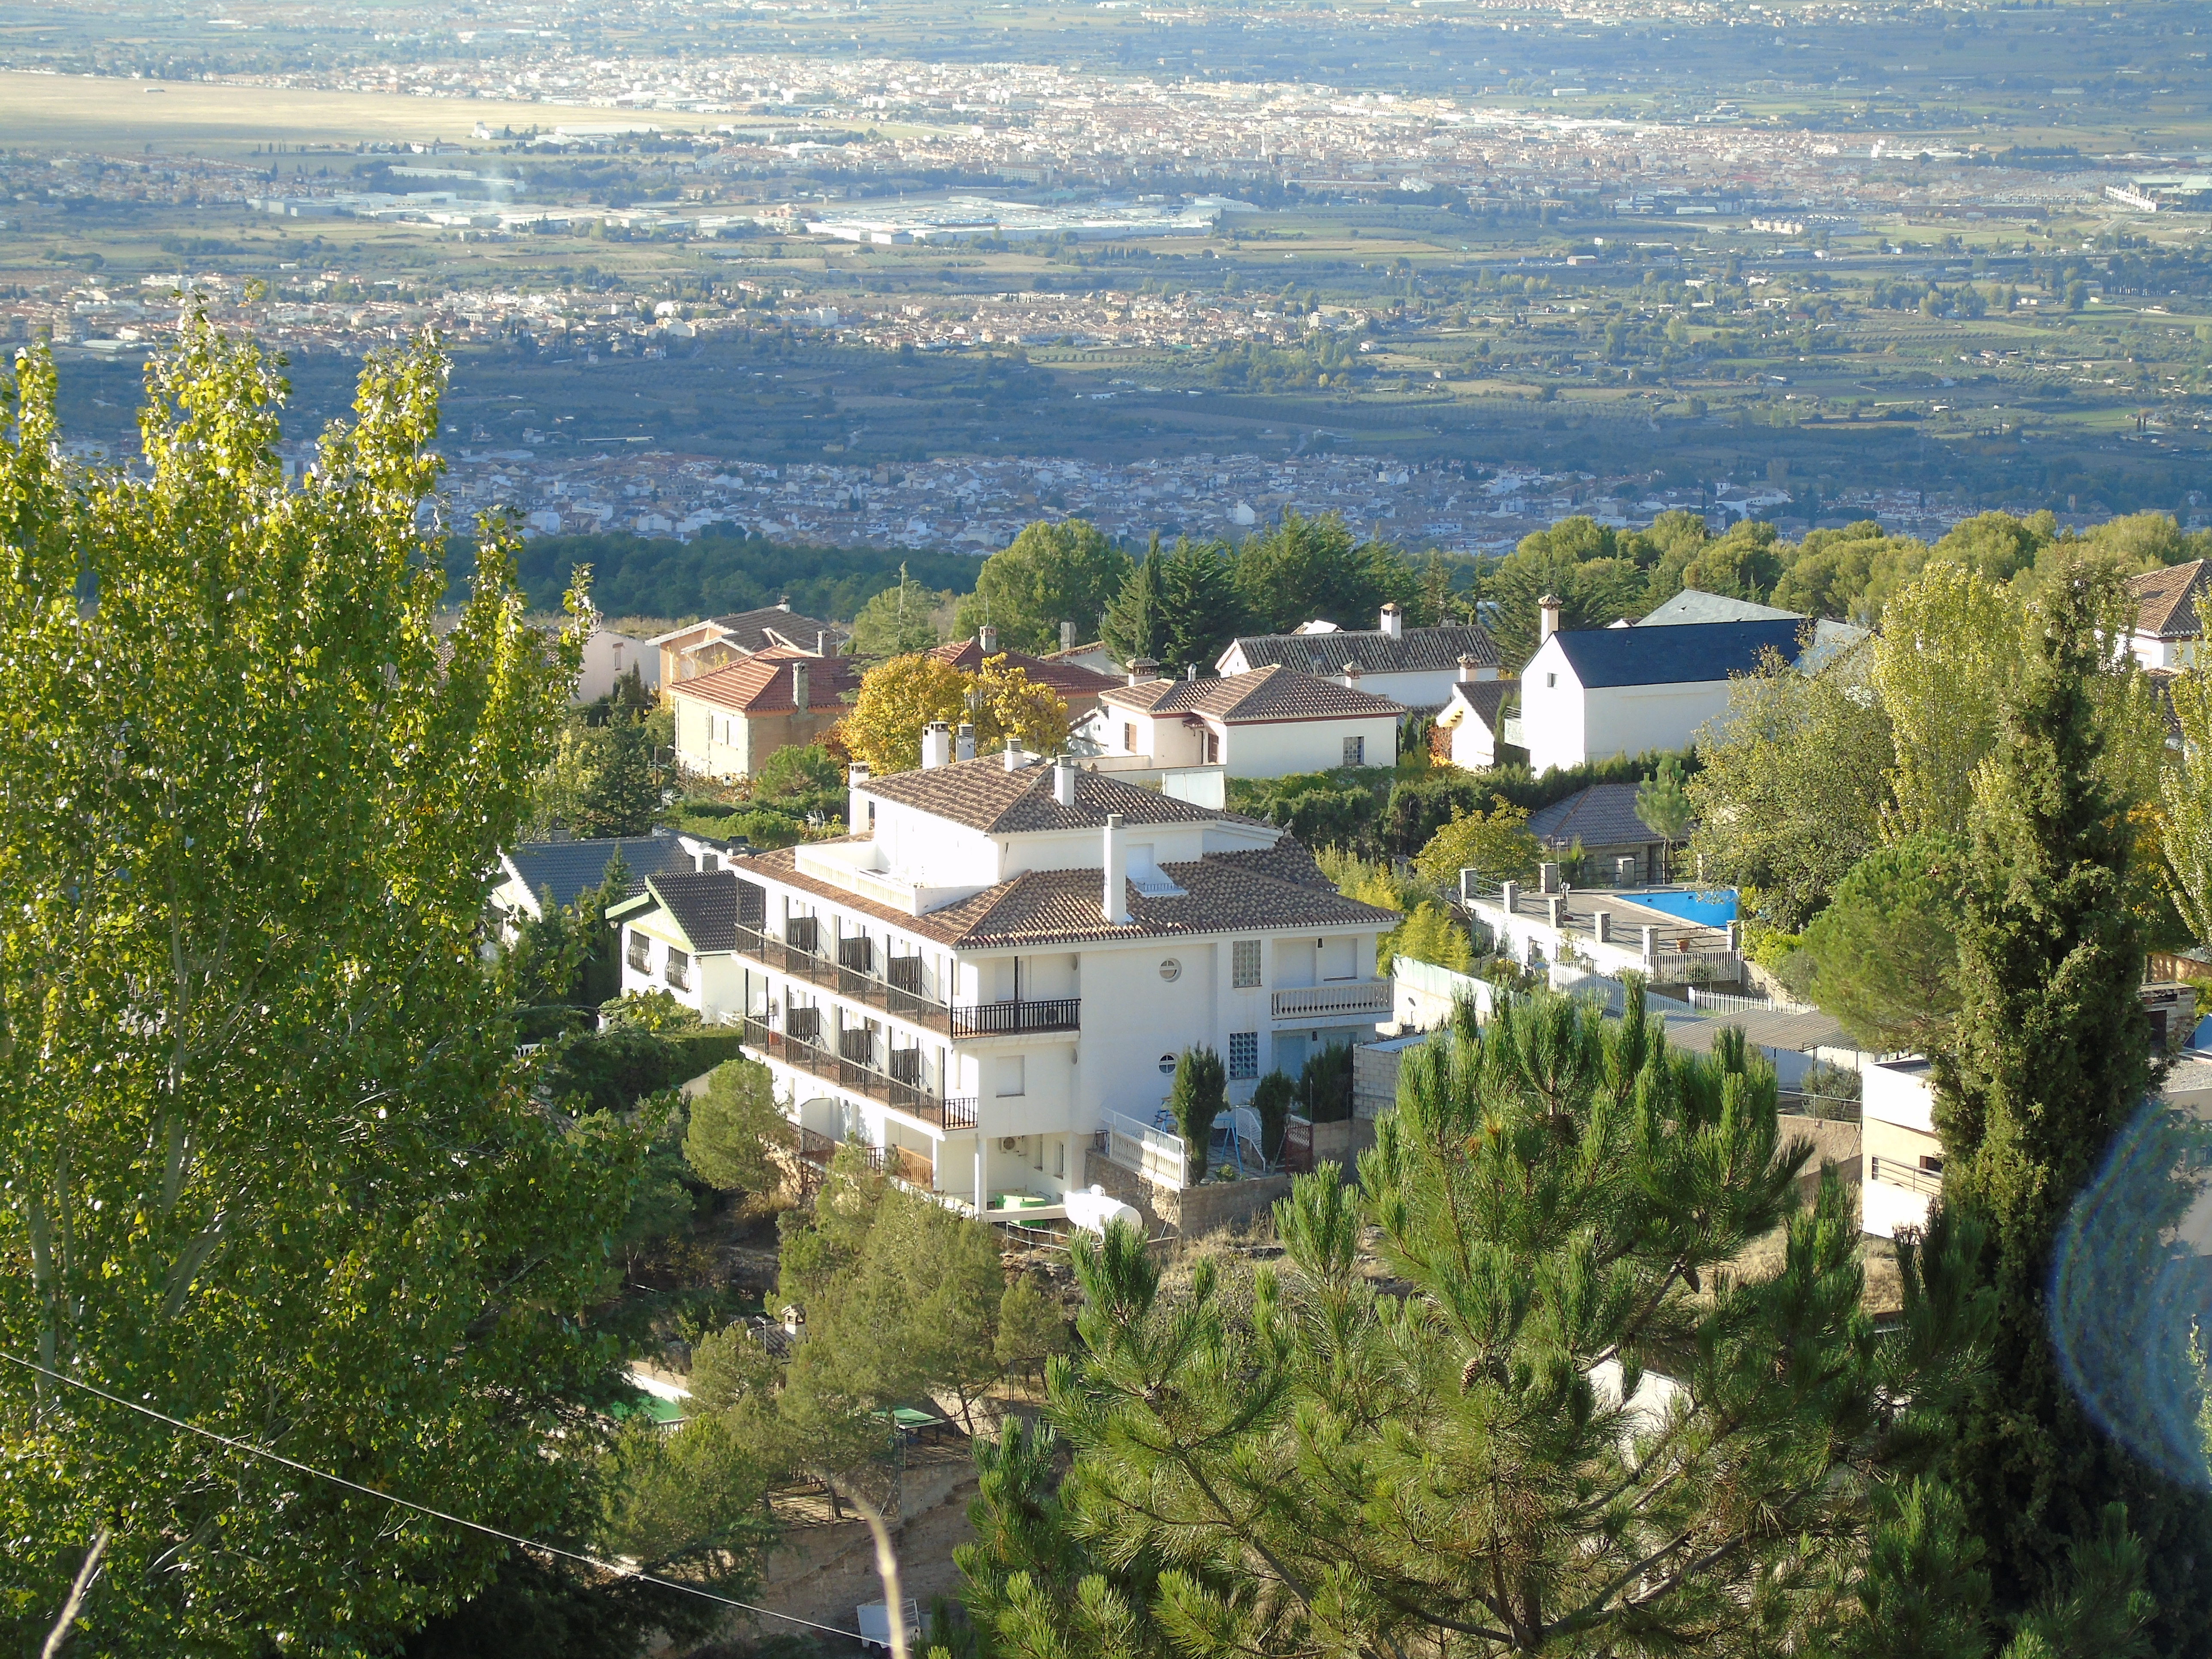 Vista de los Apartamentos al fondo la Ciudad de Granada